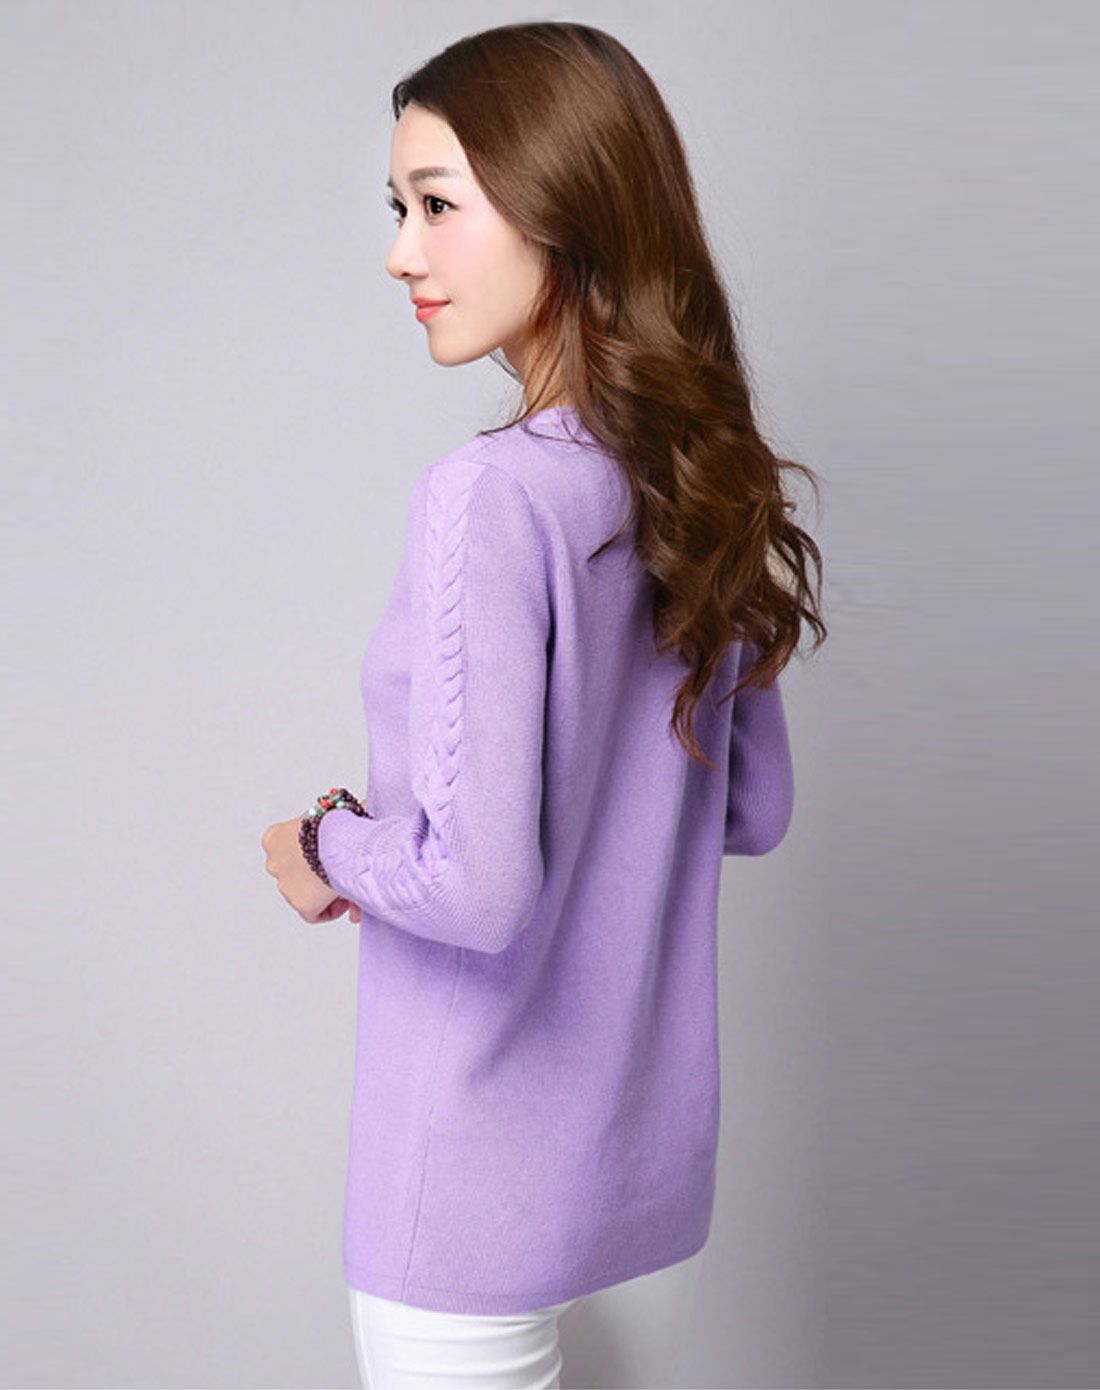 女香芋紫色纯色v领针织套头衫